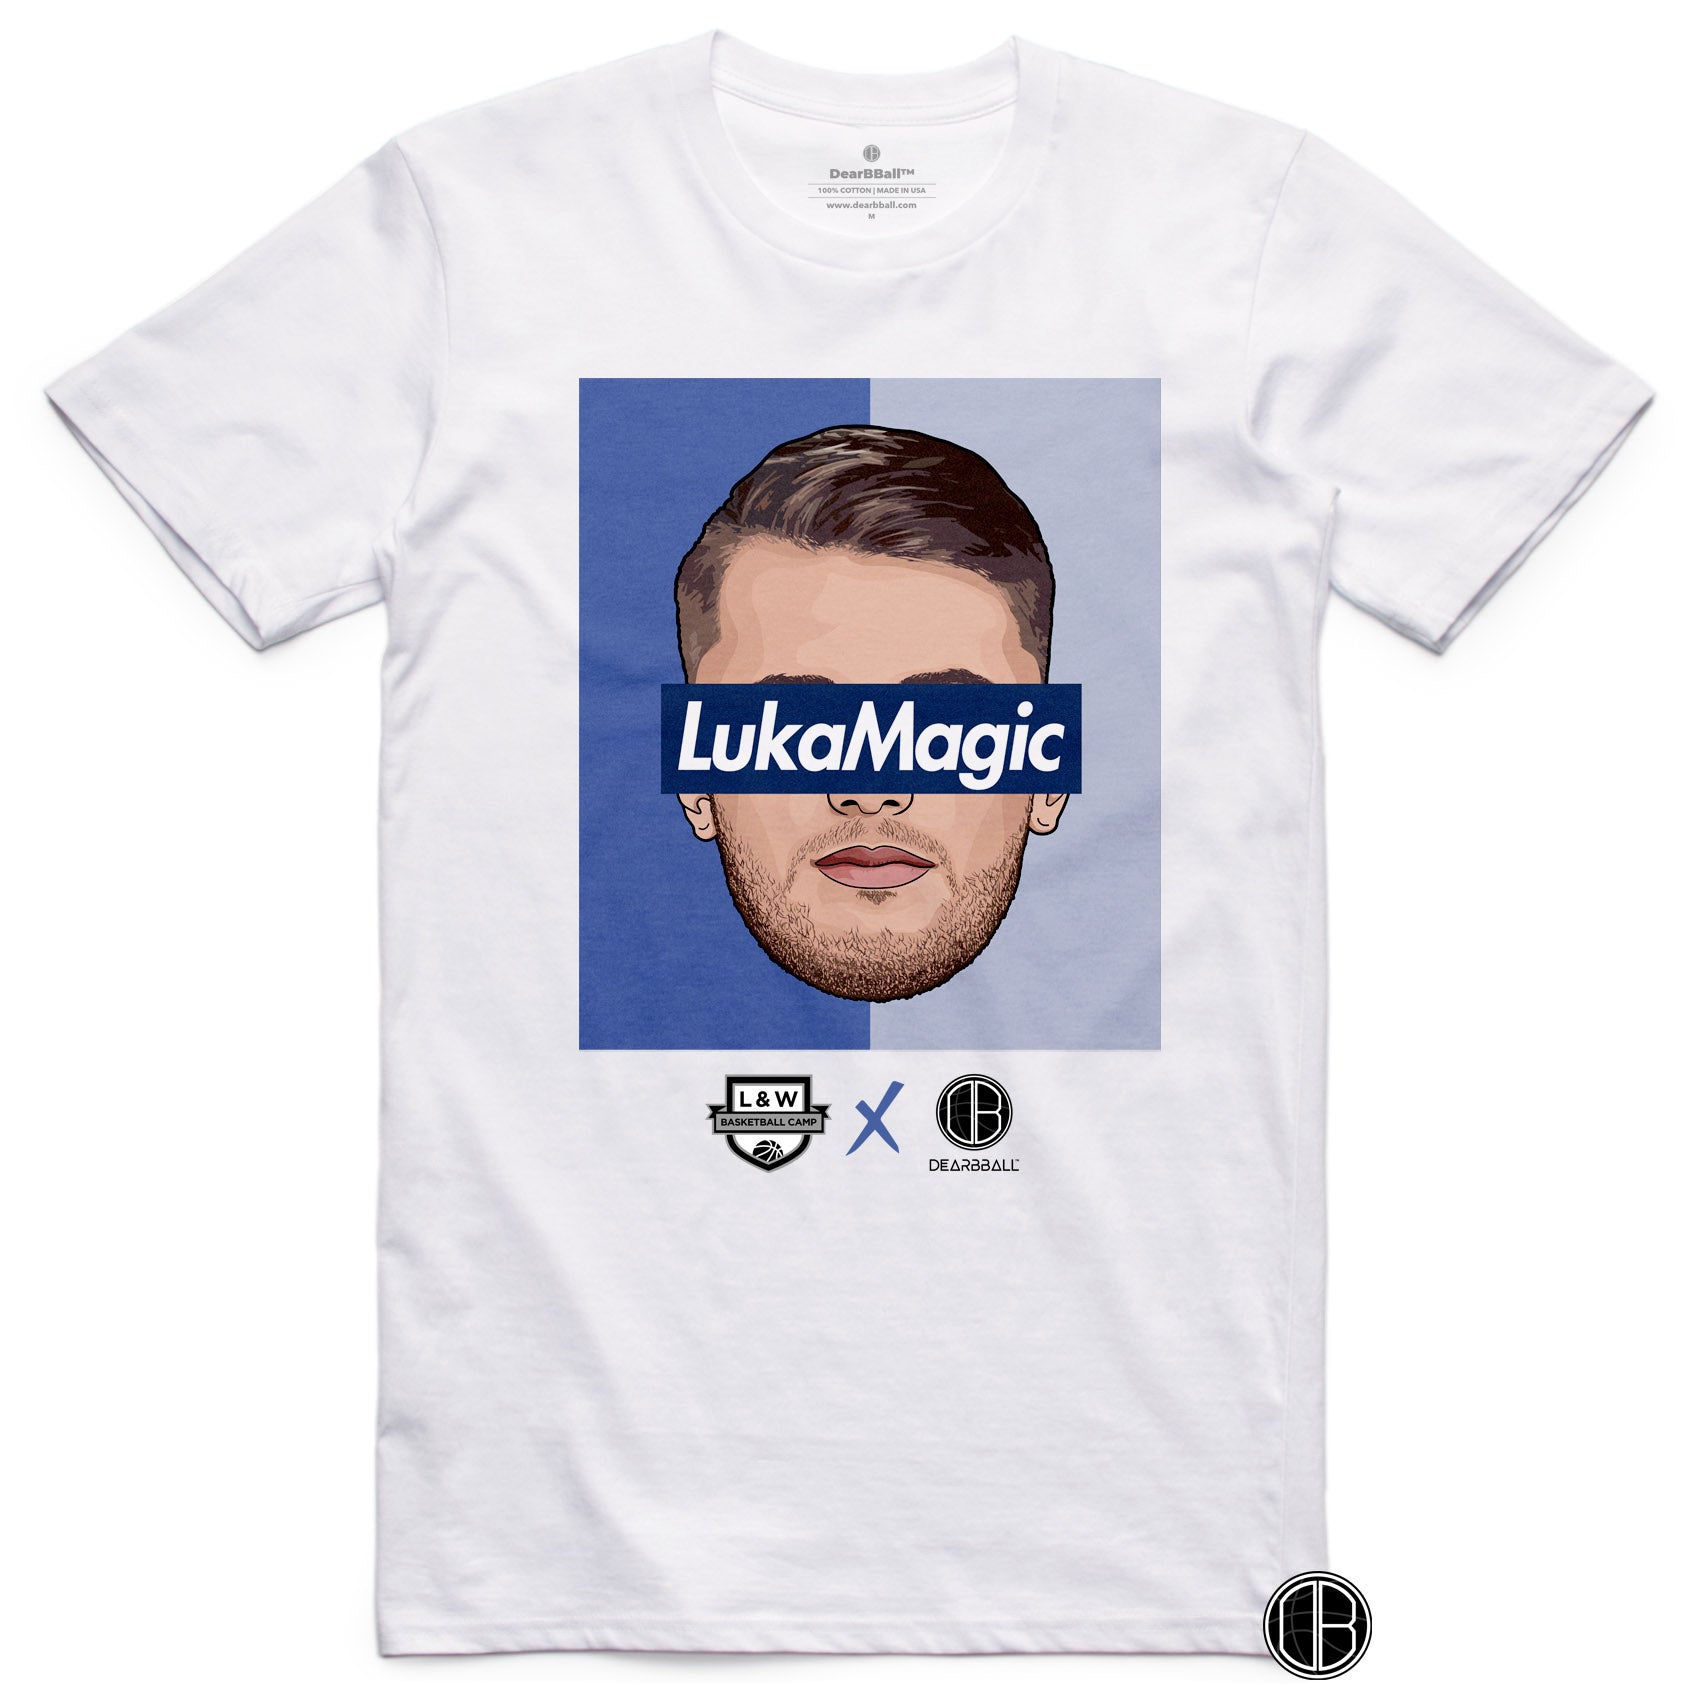 DearBBall x L&W Camp T-Shirt - LukaMagic